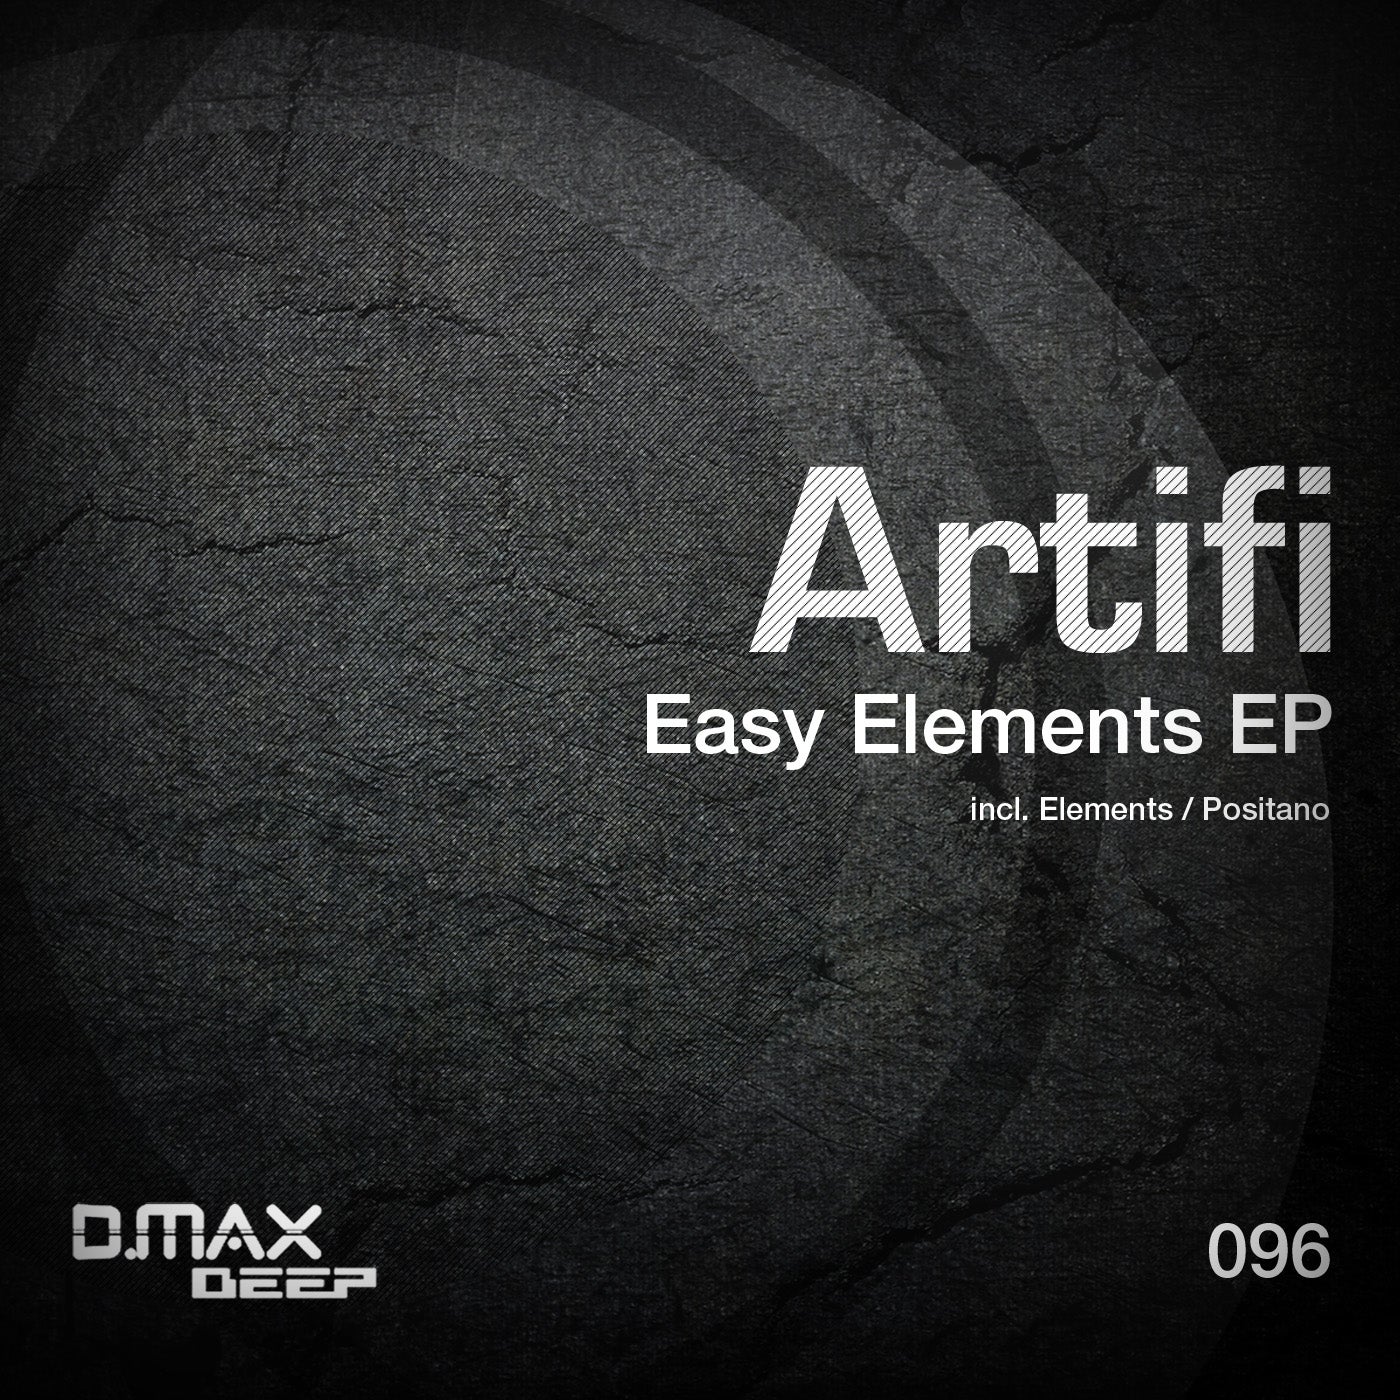 Easy Elements EP